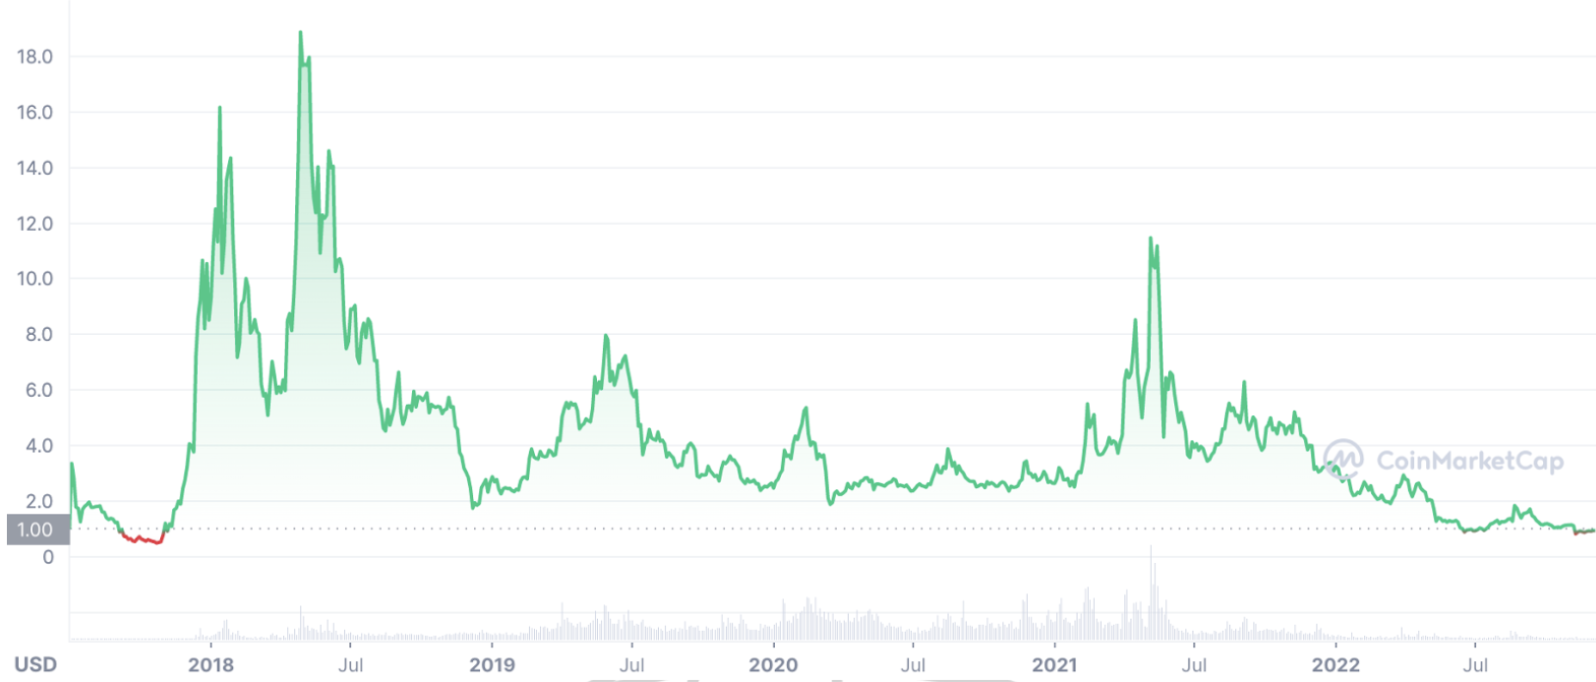 EOS Price Chart – CoinMarketCap